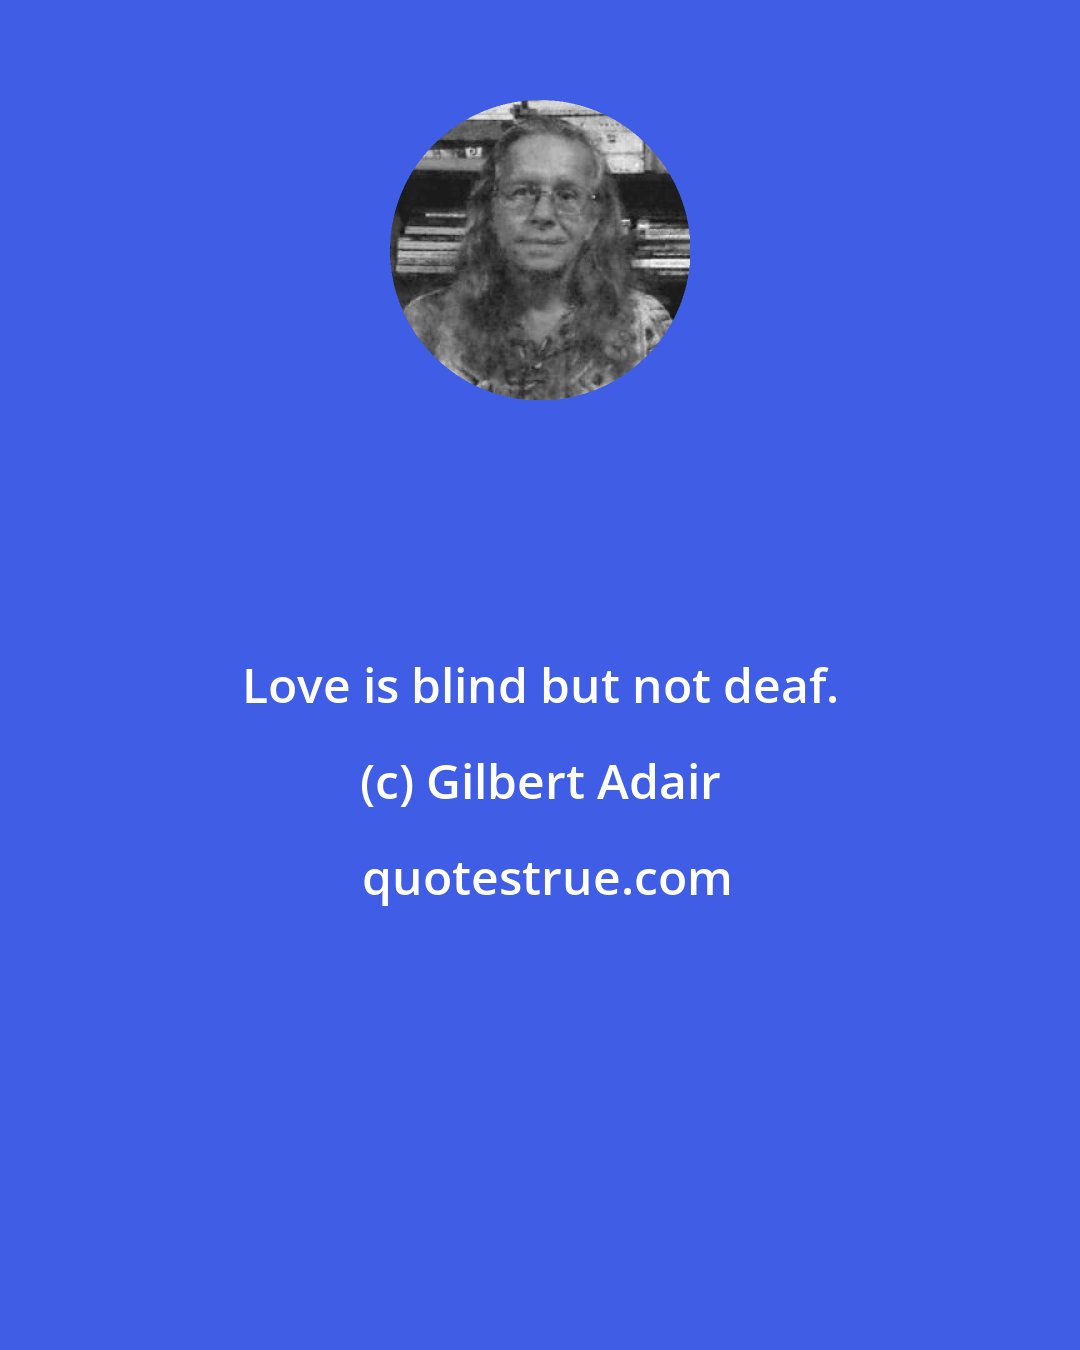 Gilbert Adair: Love is blind but not deaf.